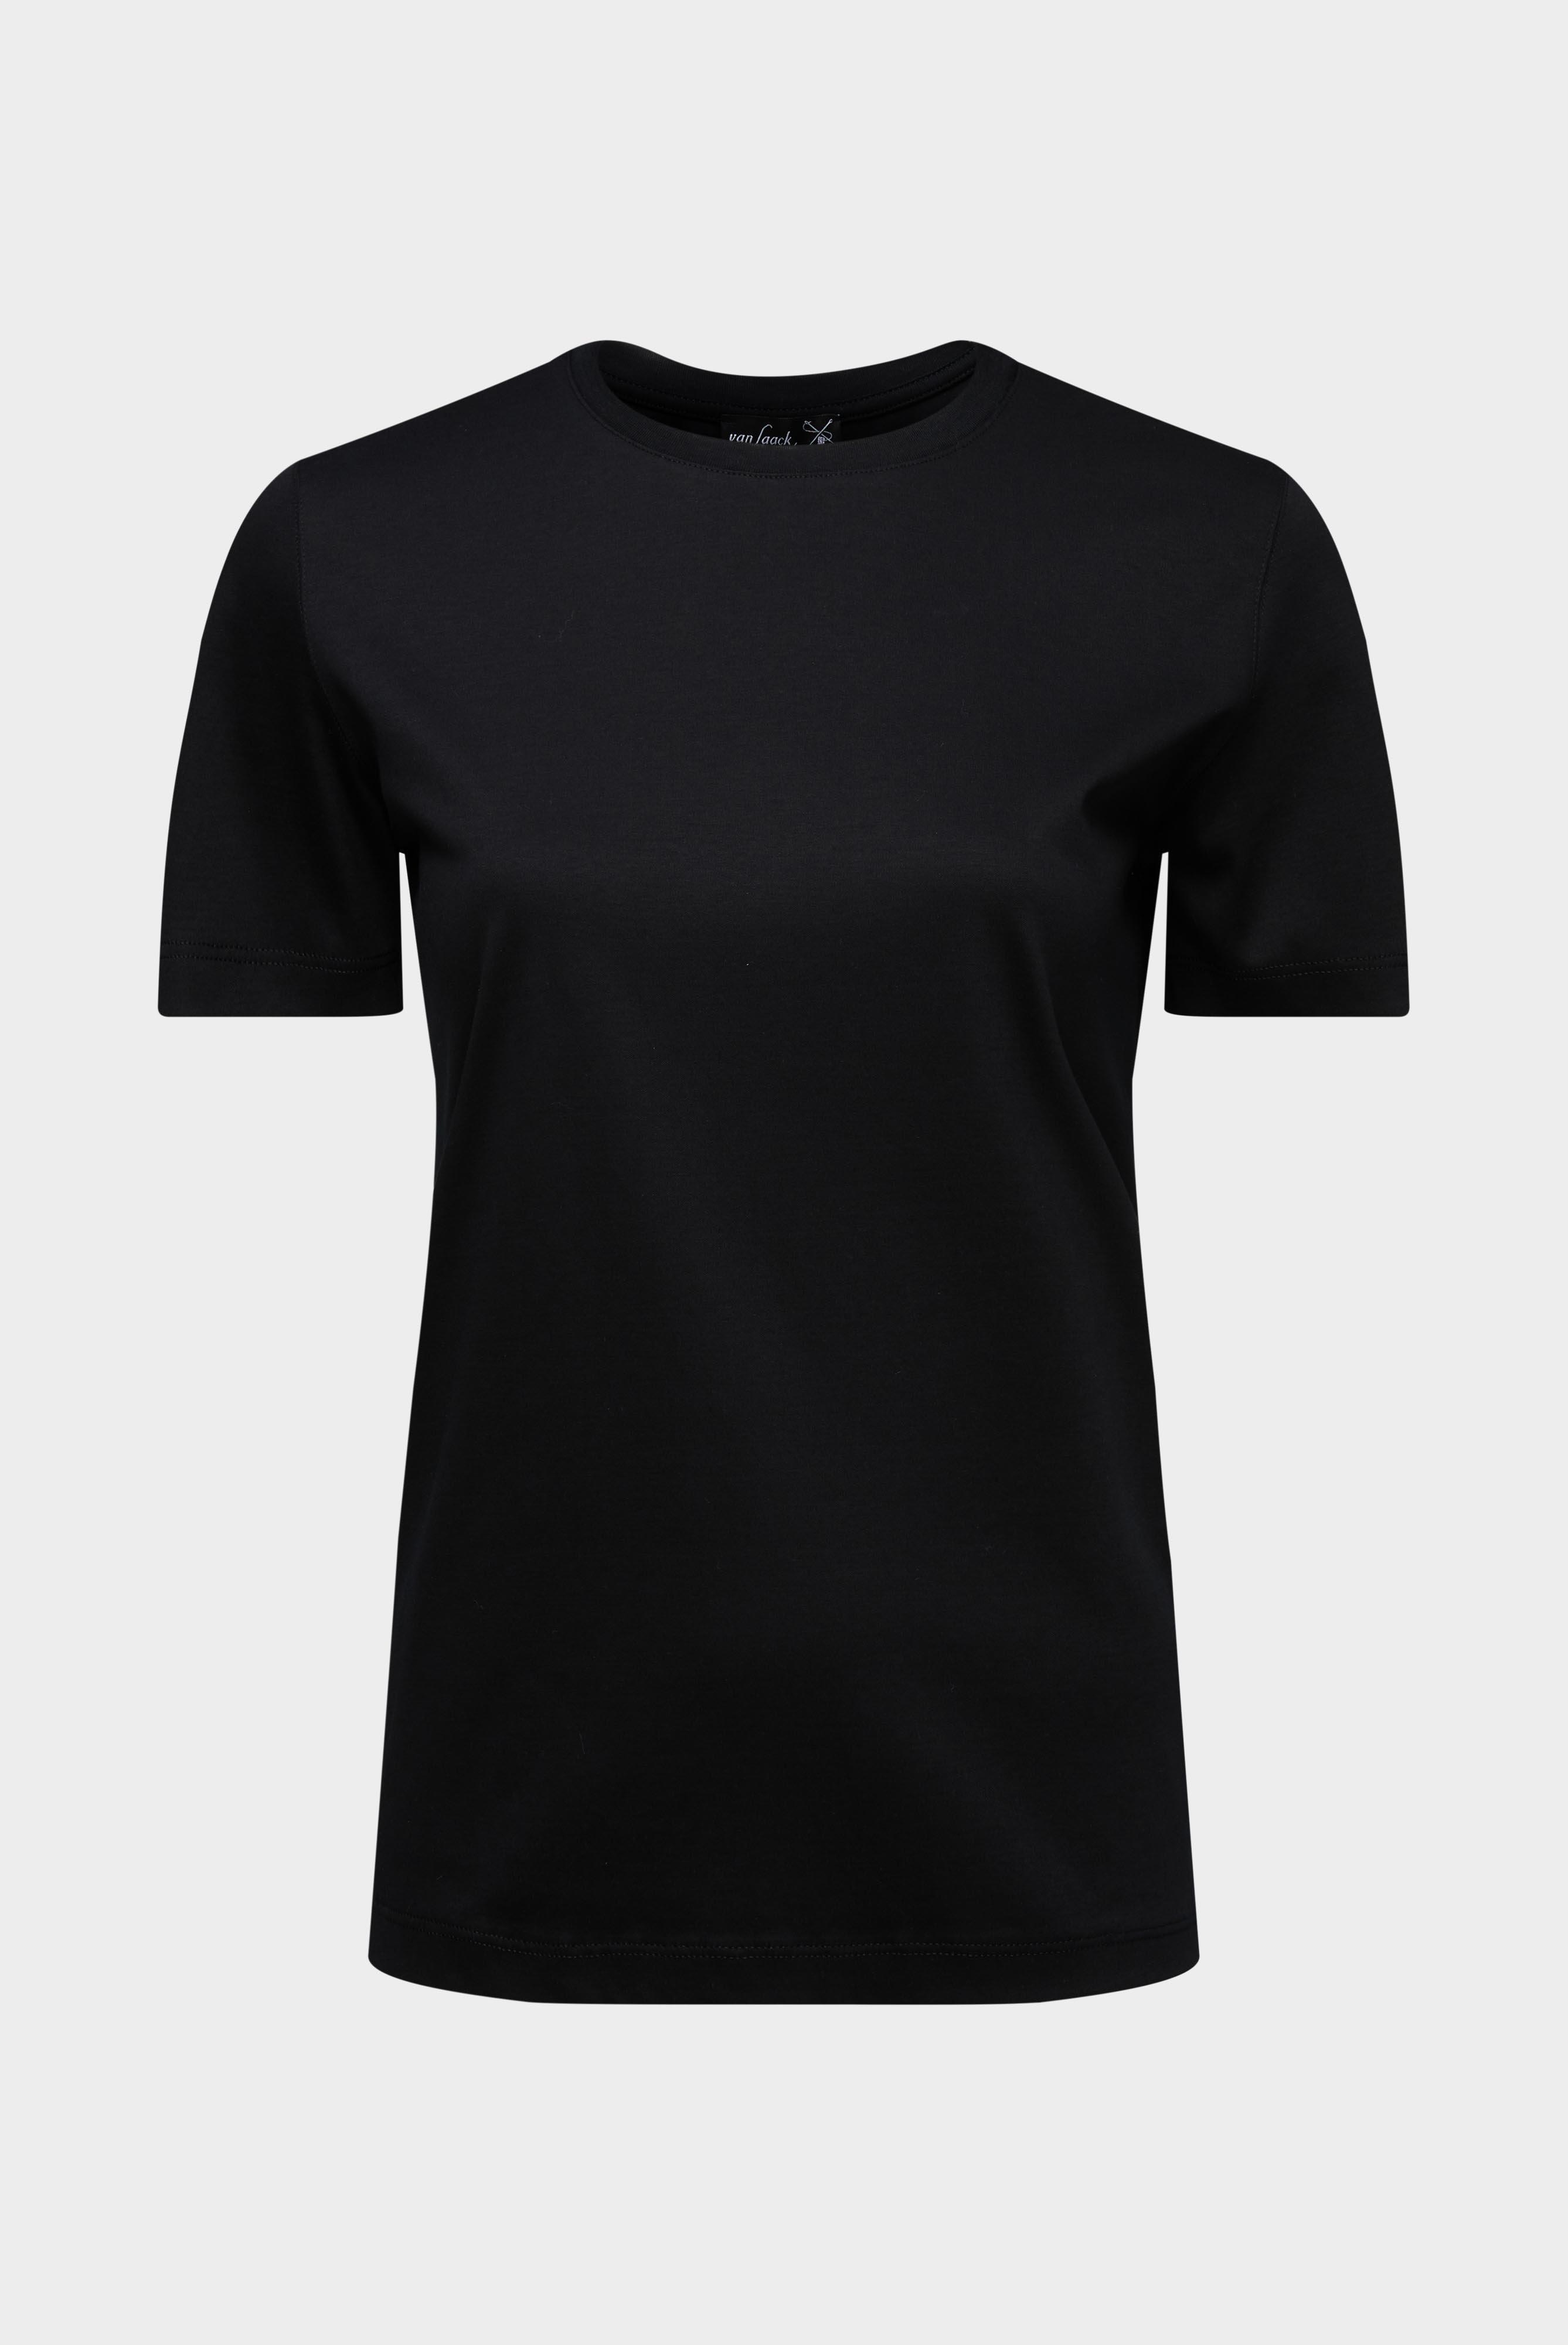 Tops & T-Shirts+Jersey T-Shirt+05.6384.18.180031.099.34